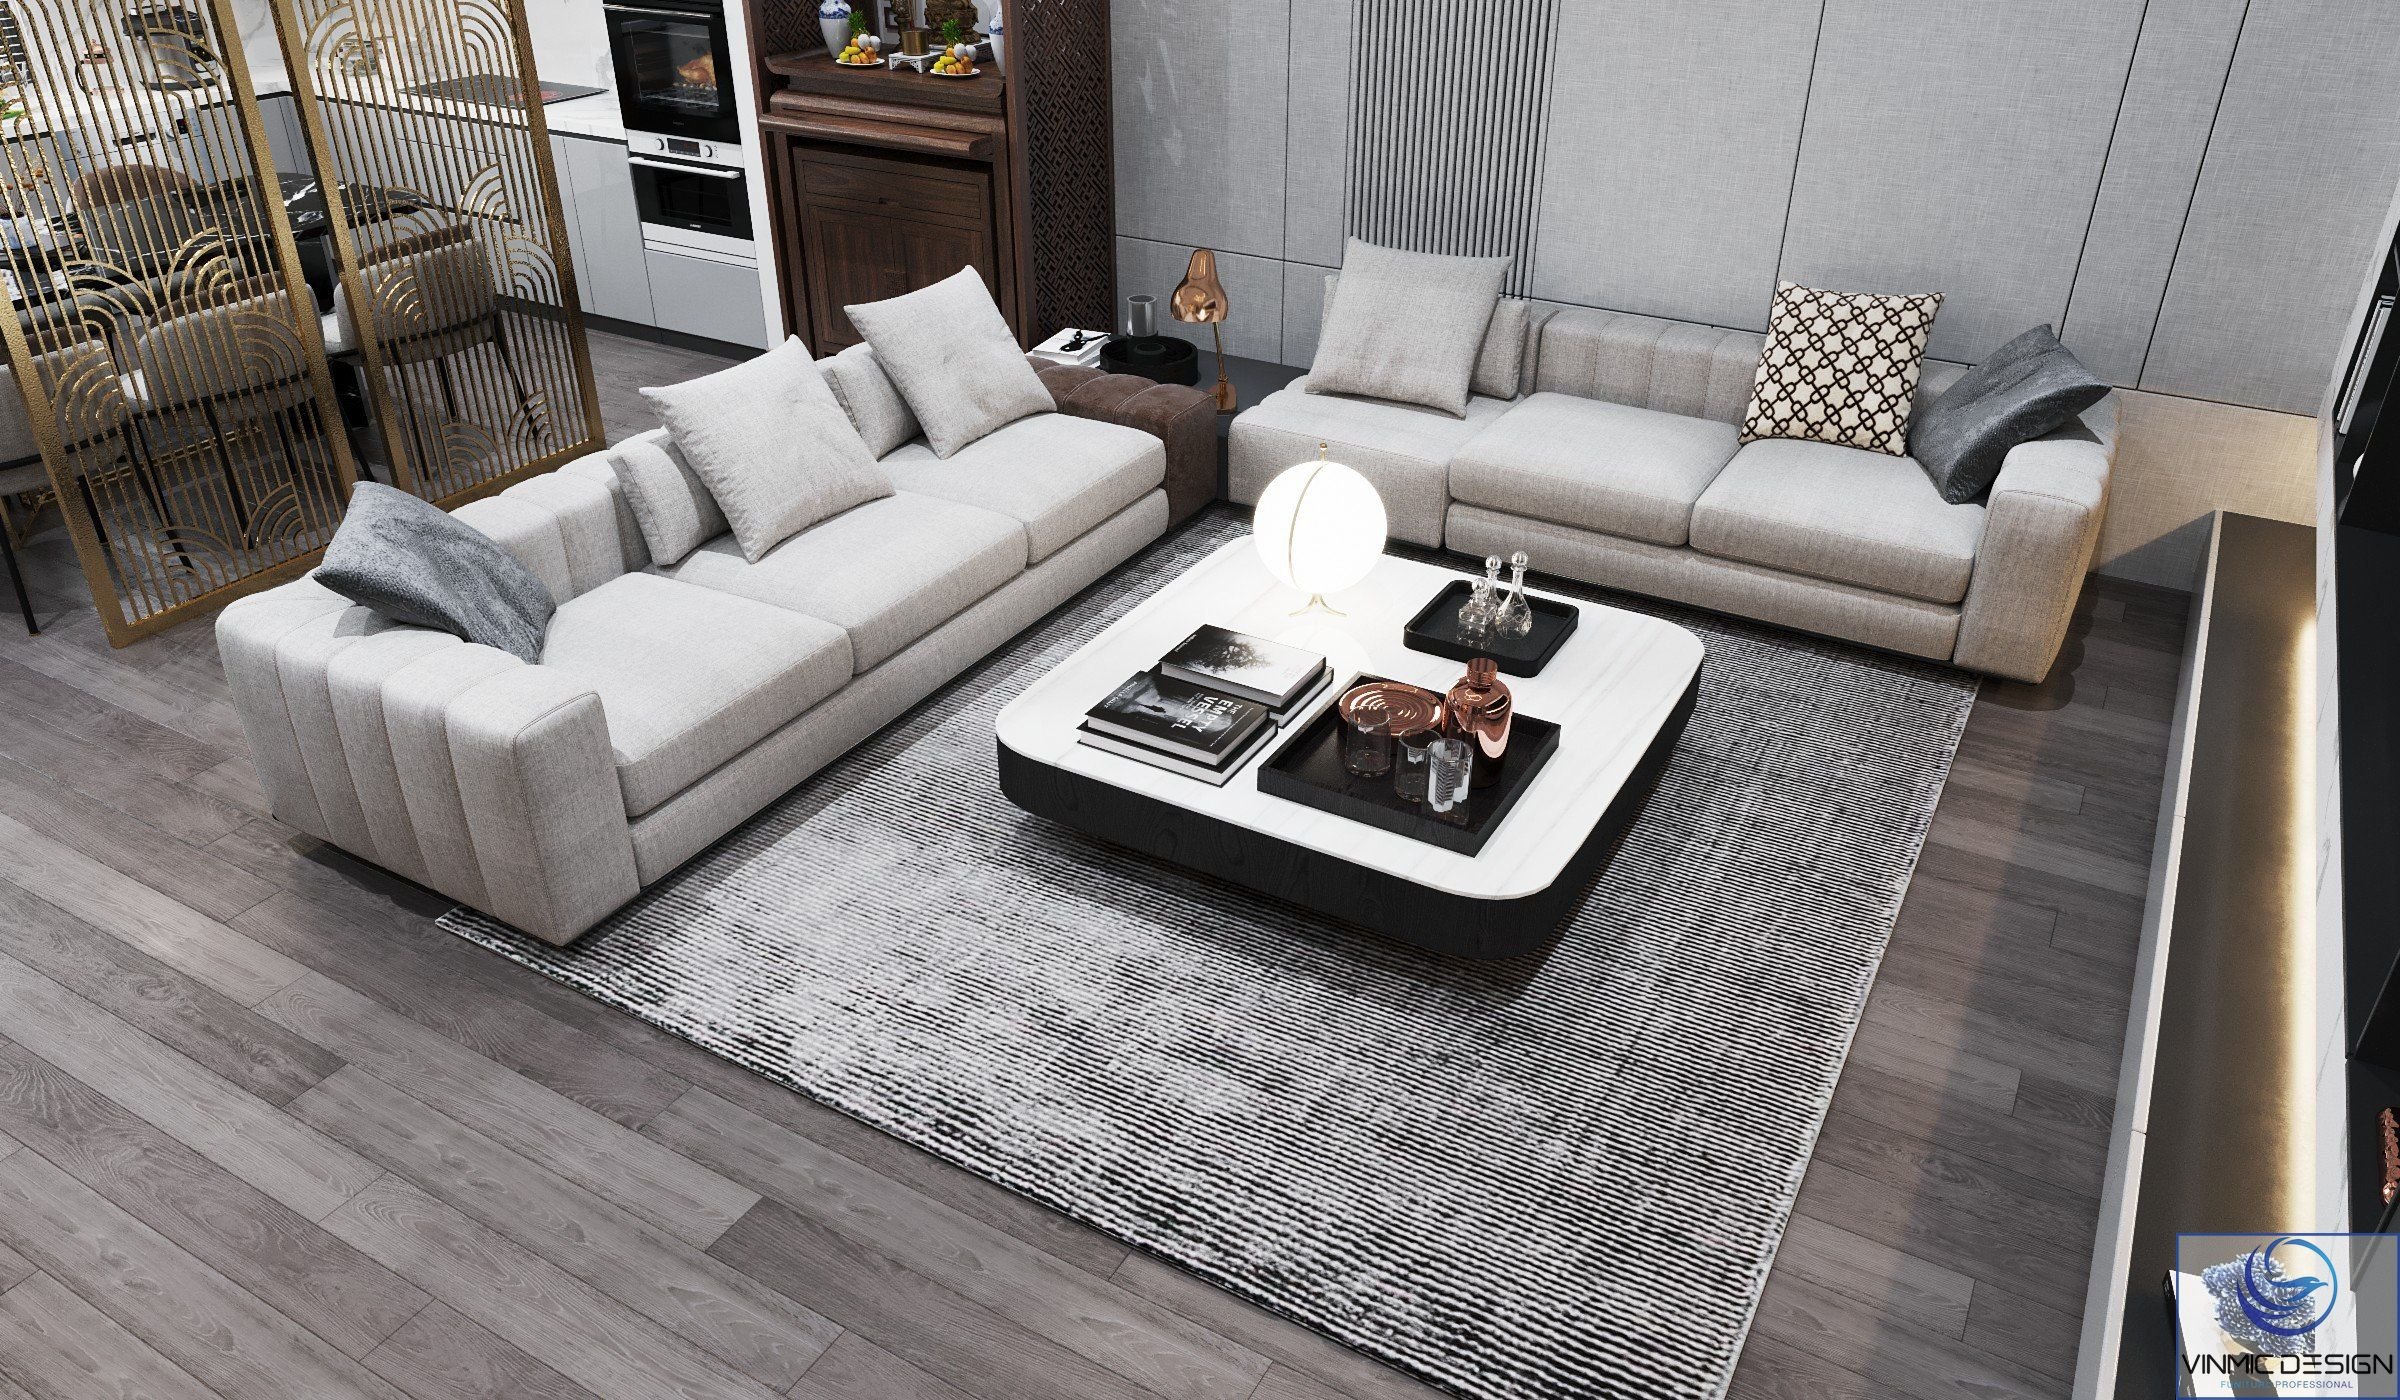 Bộ sofa văng dài được thiết kế với chất liệu nỉ cao cấp